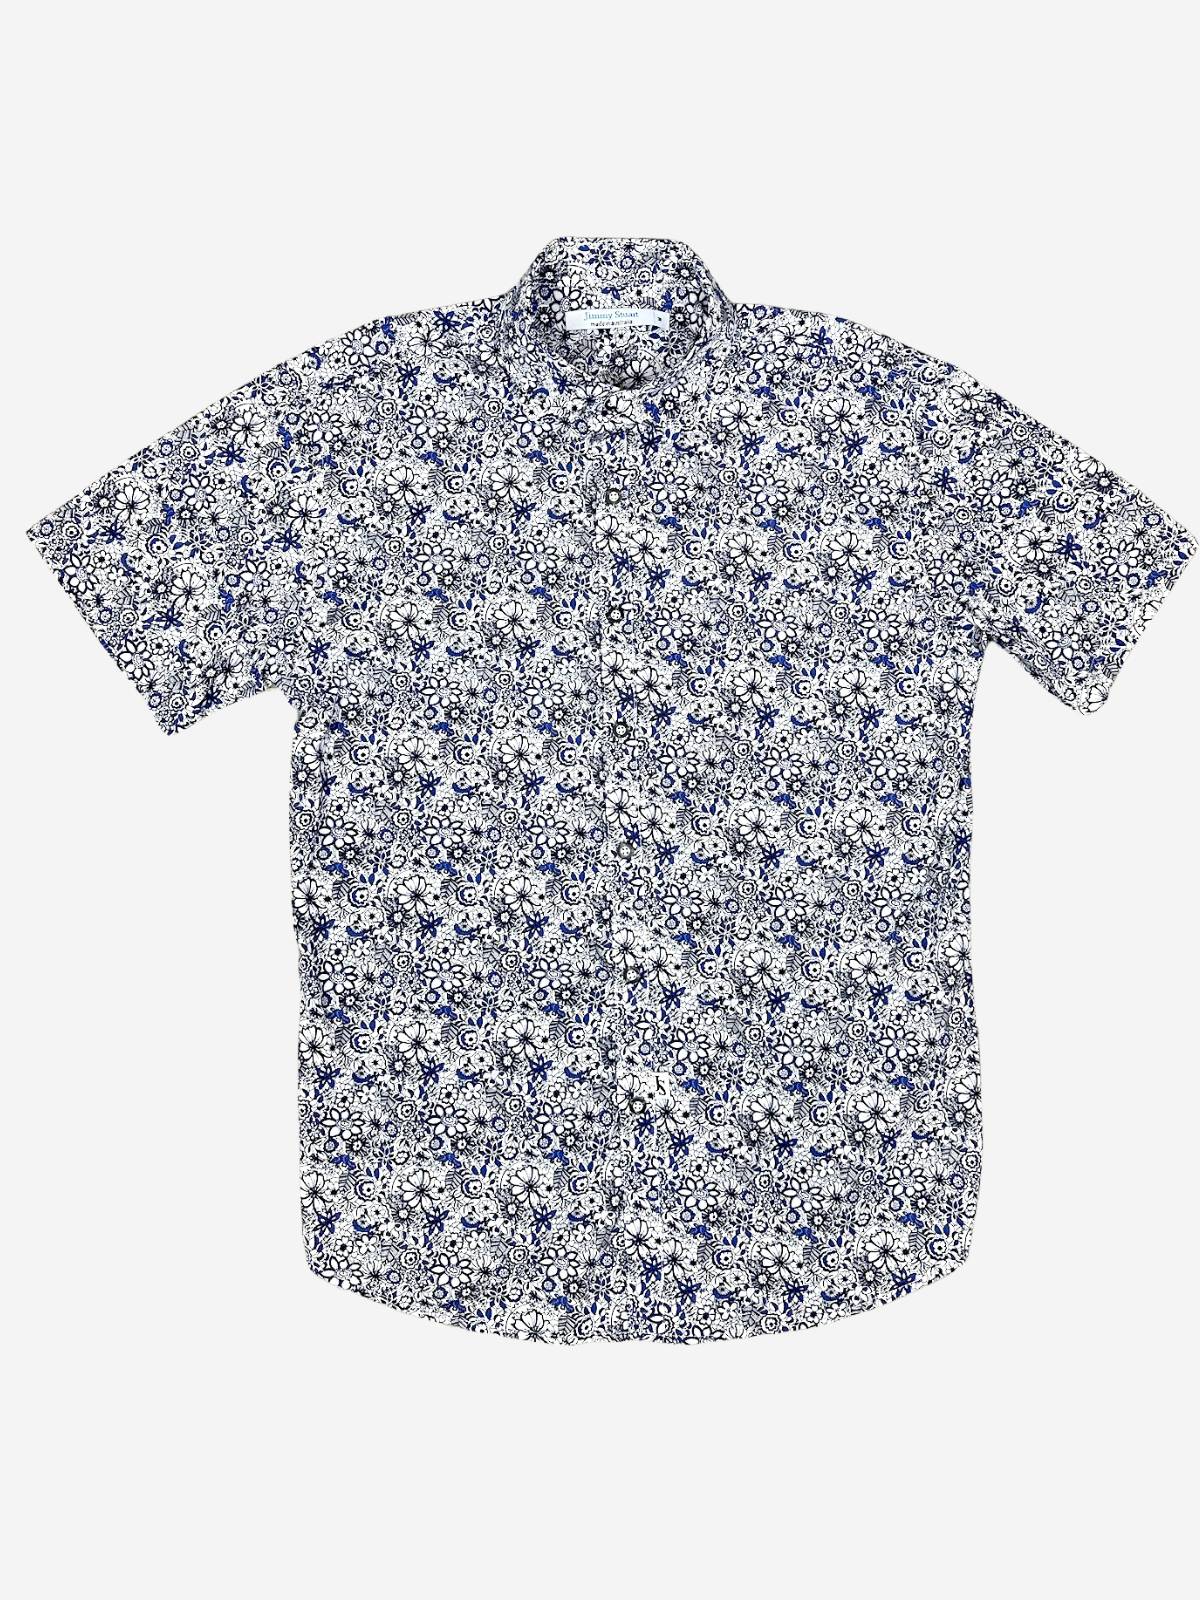 Hyde Floral Cotton S/S Shirt